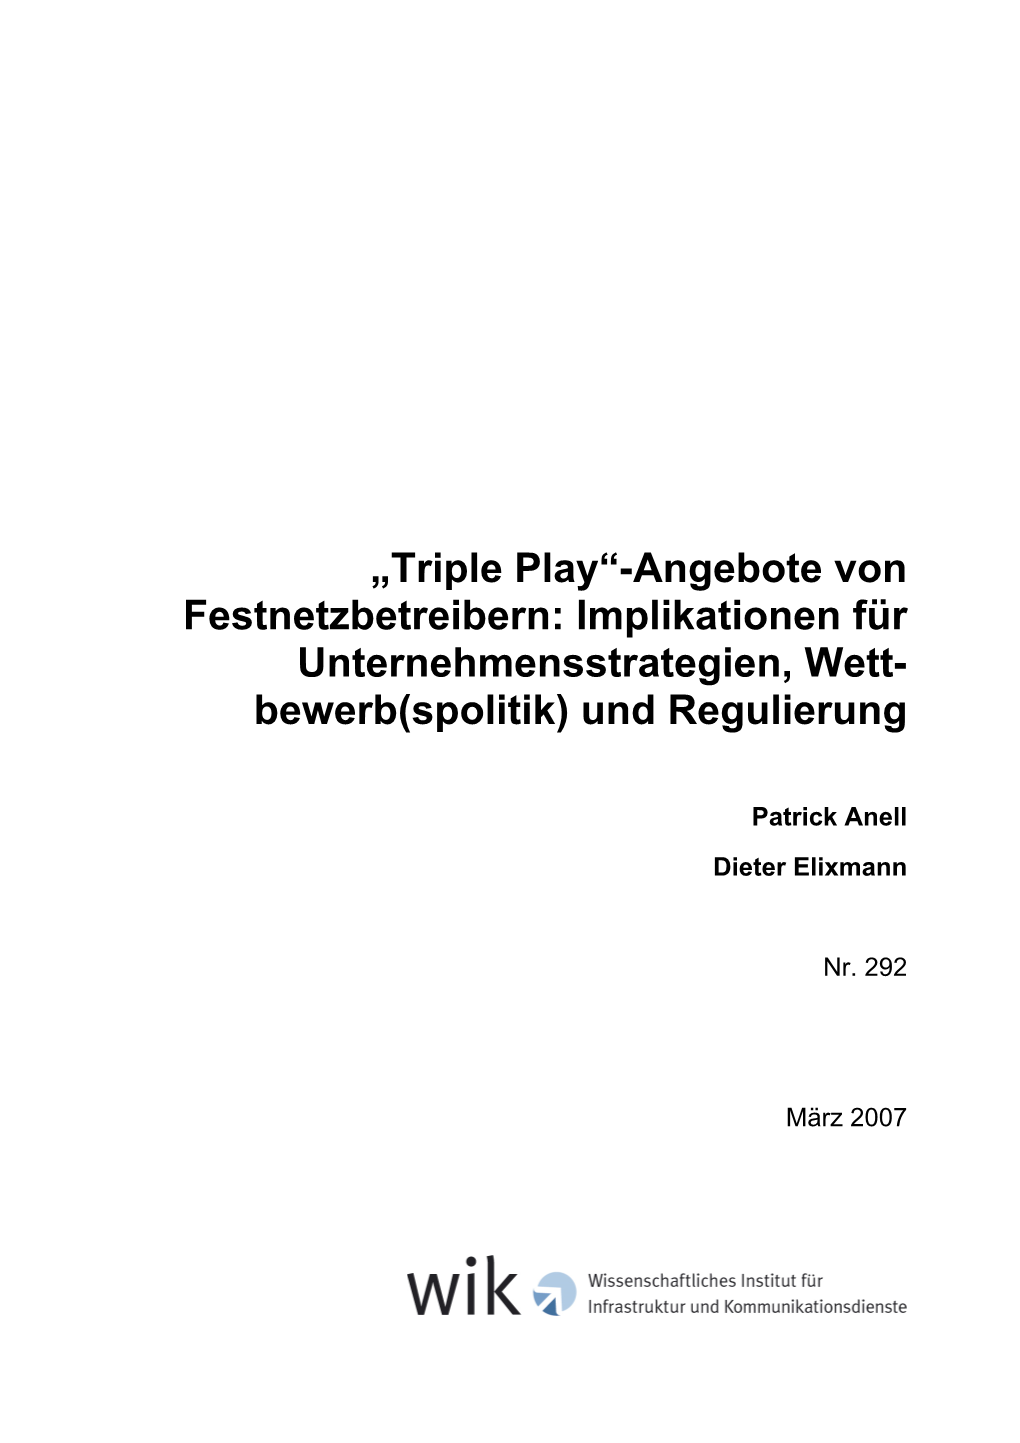 Triple Play“-Angebote Von Festnetzbetreibern: Implikationen Für Unternehmensstrategien, Wett- Bewerb(Spolitik) Und Regulierung